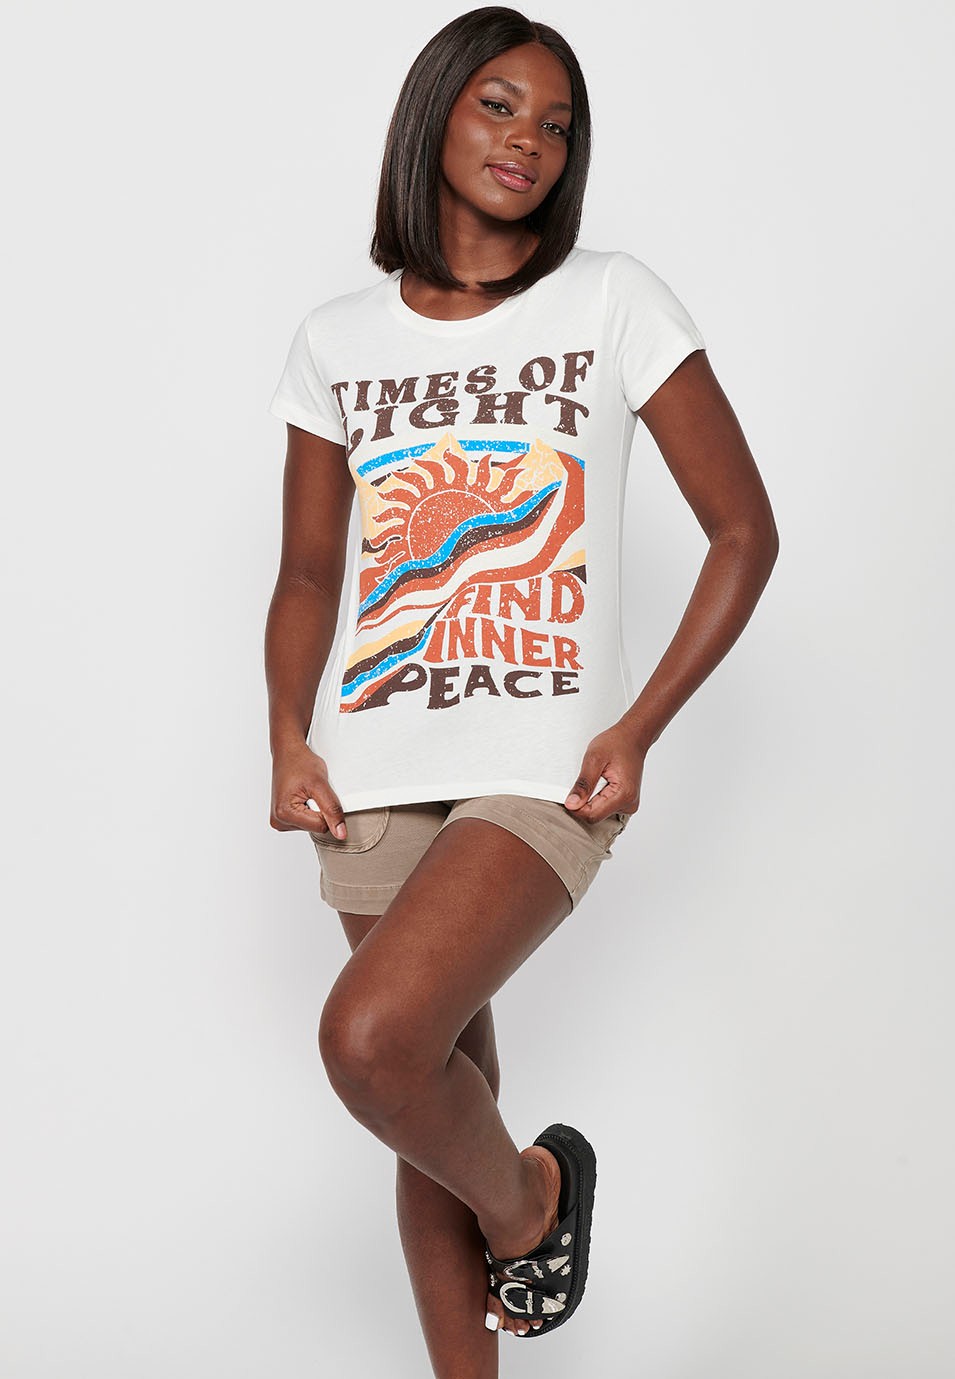 Damen-T-Shirt aus Baumwolle mit kurzen Ärmeln, Rundhalsausschnitt und ecrufarbenem Aufdruck auf der Vorderseite 3